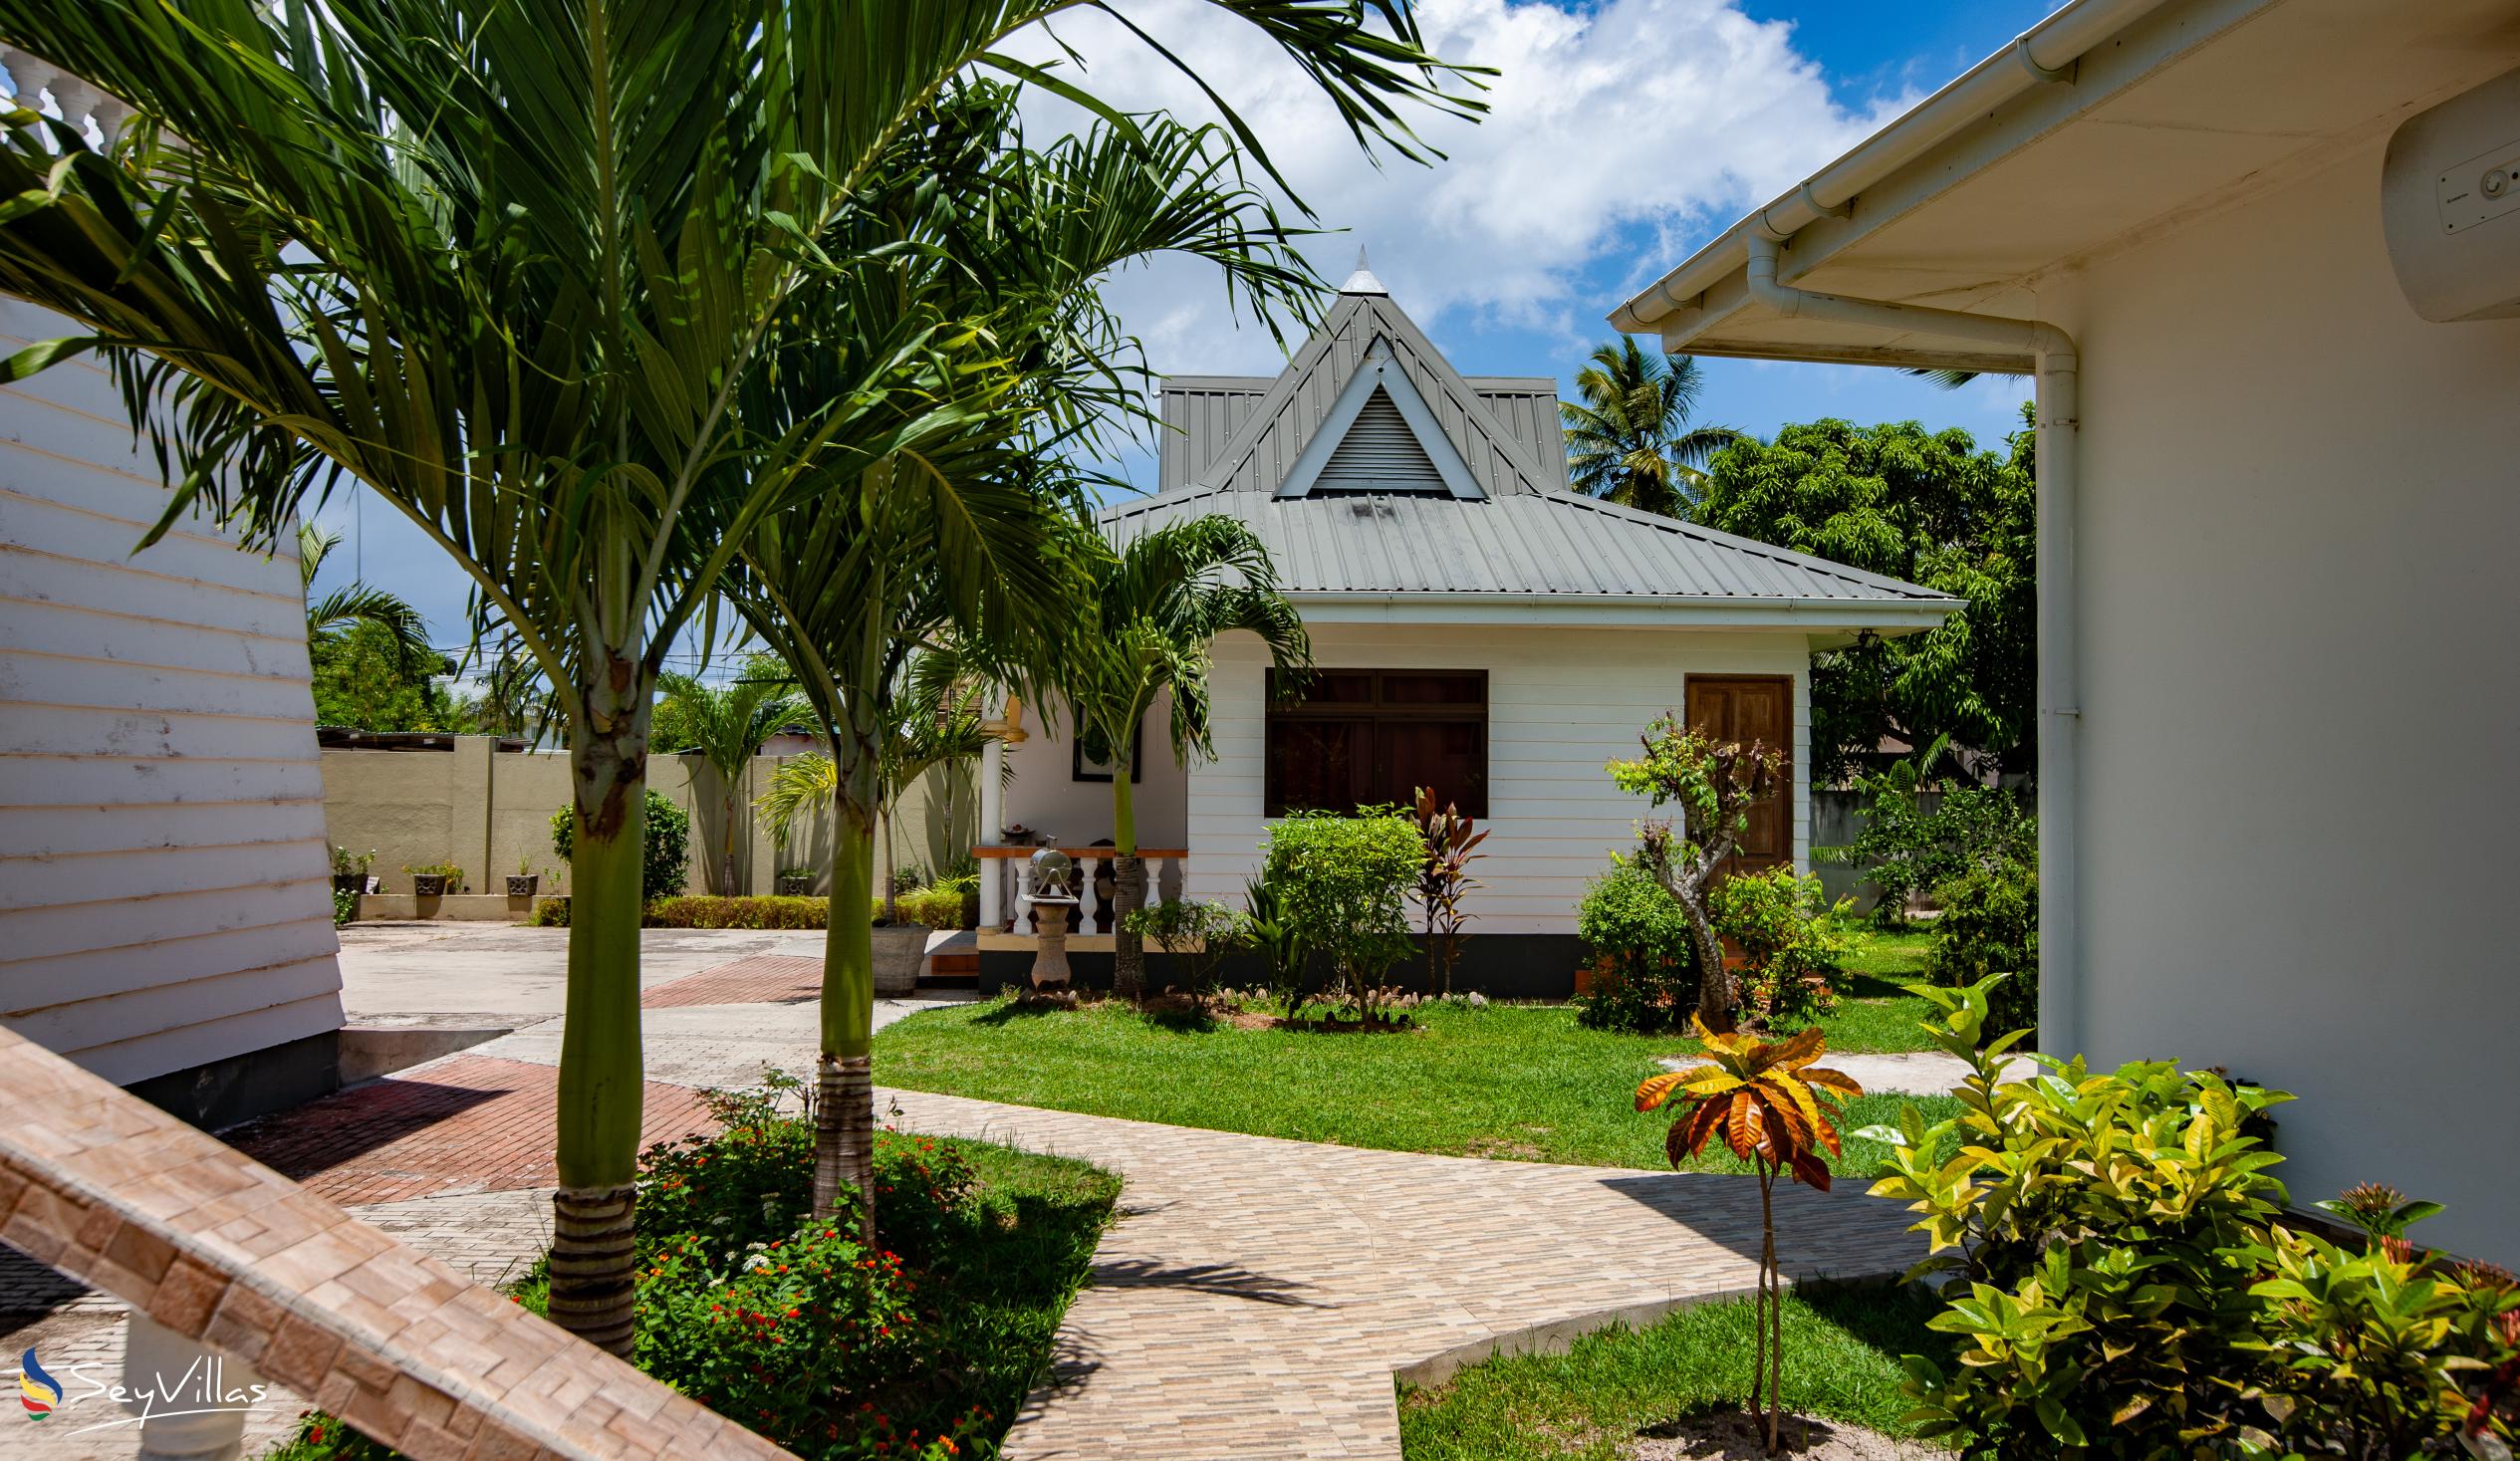 Photo 4: Villa Aya - Outdoor area - Praslin (Seychelles)